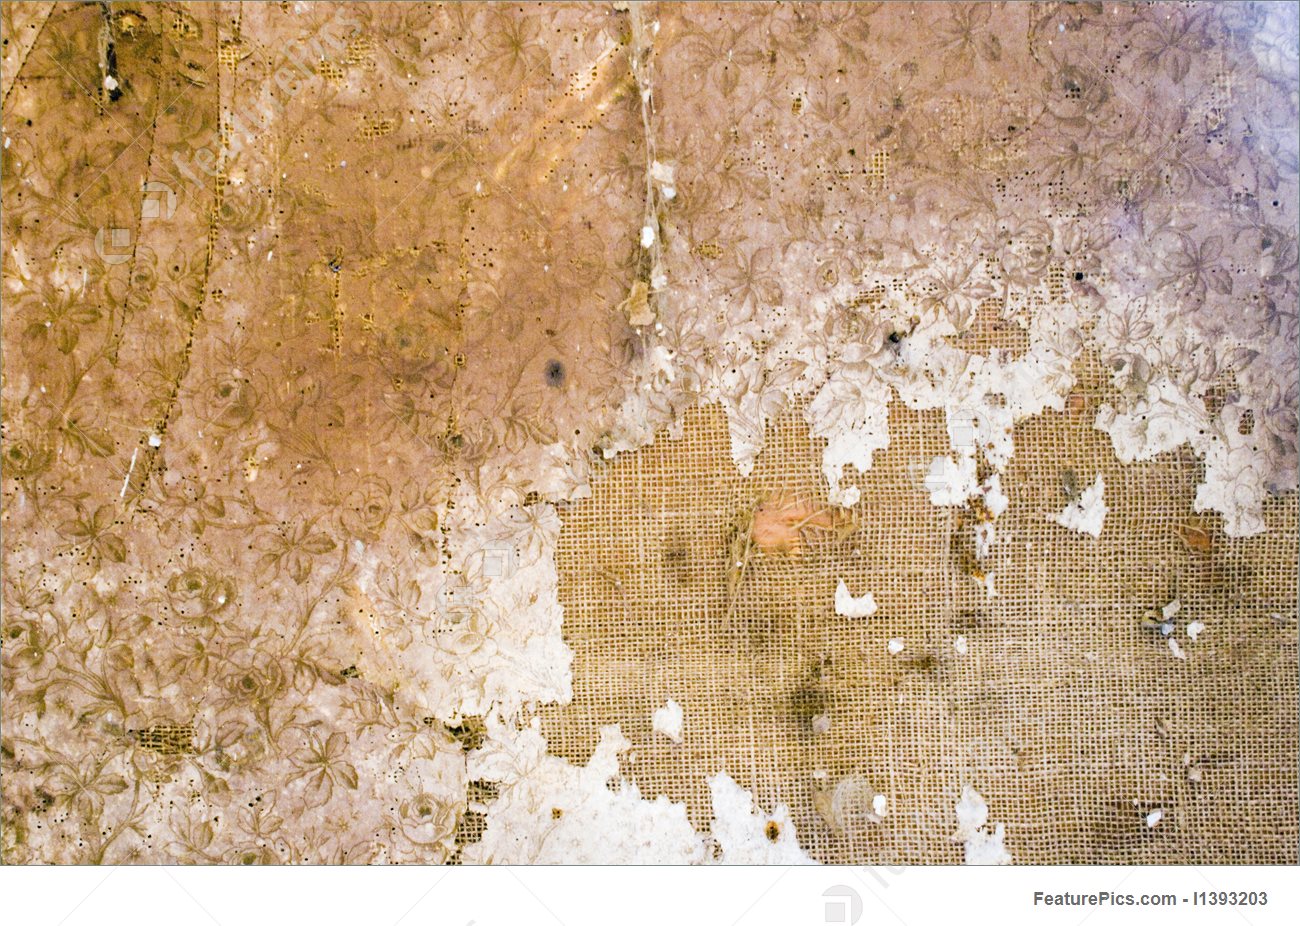 古い壁の壁紙,壁,褐色,ベージュ,木材,パターン